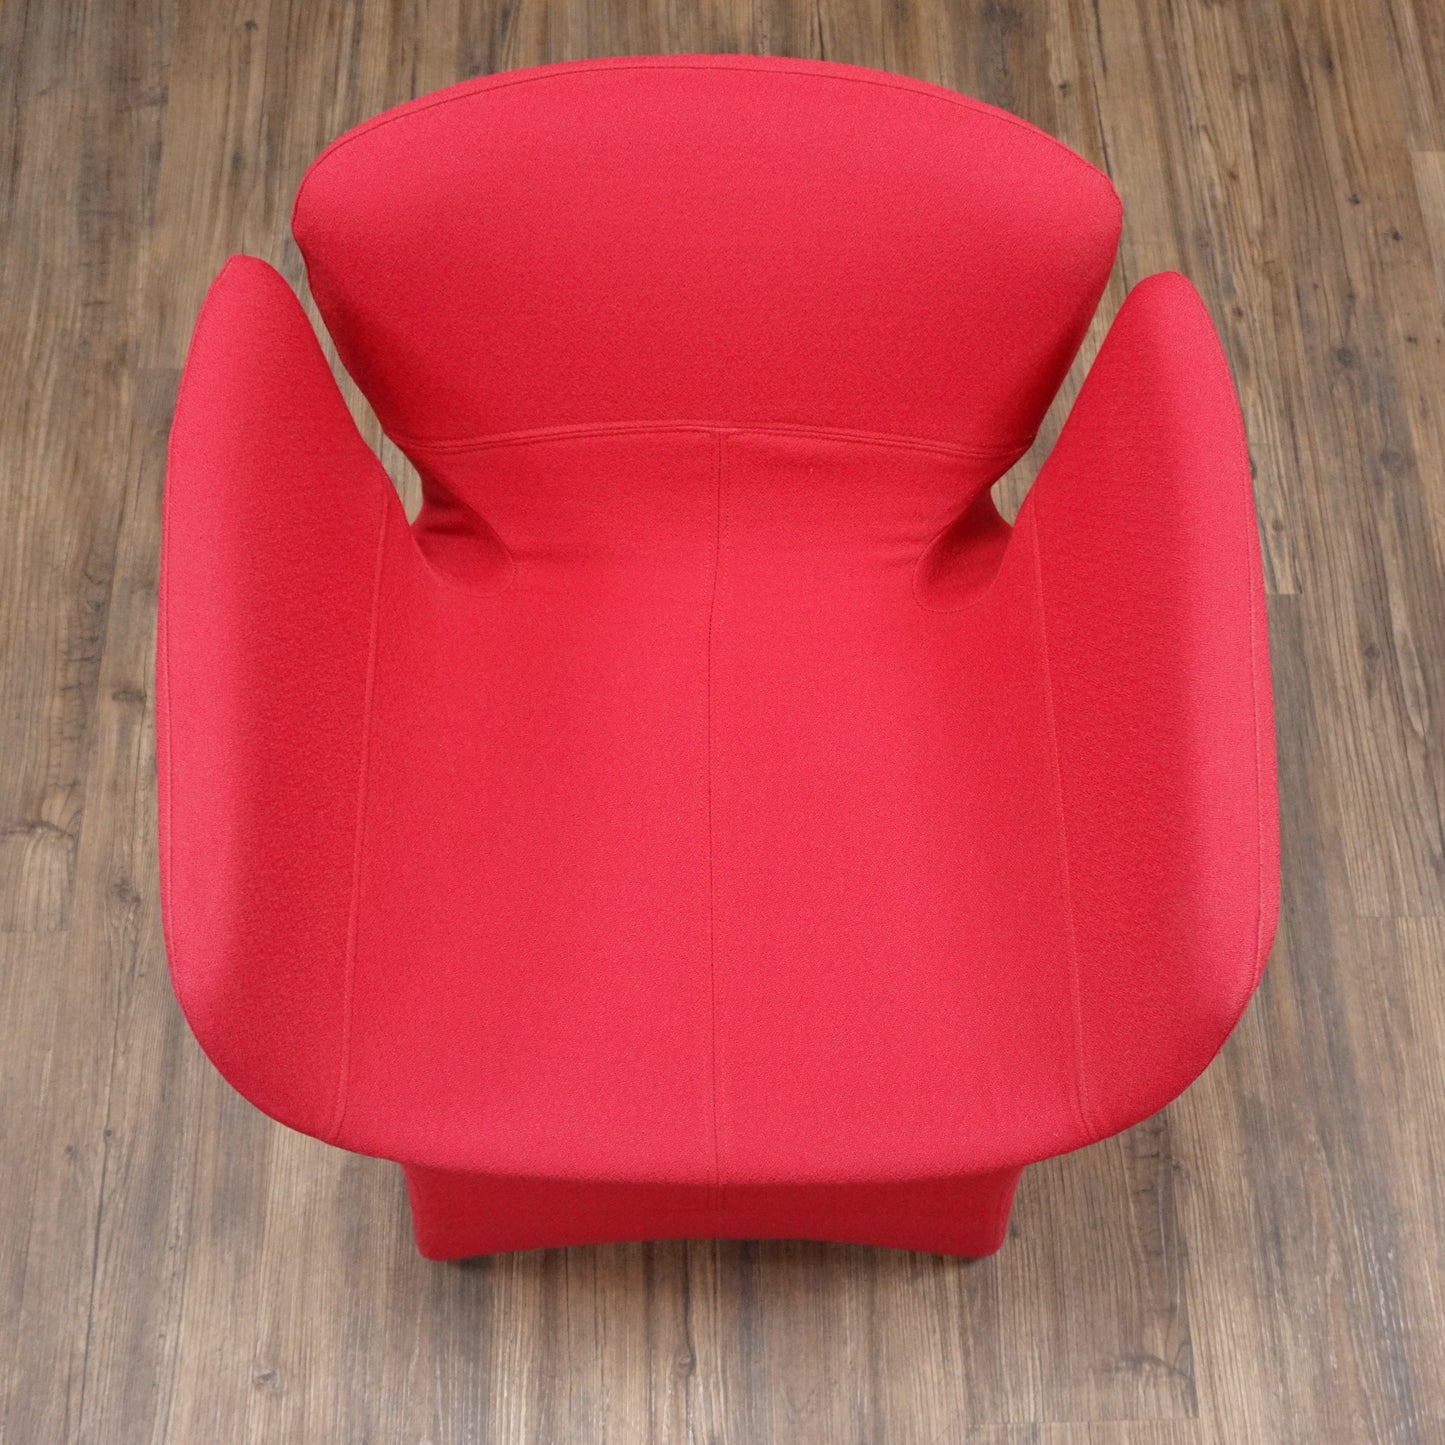 MOROSO | Bloomy | Trendfarbe | Design Pop Art Deco Chair | Blumen Stuhl Sessel